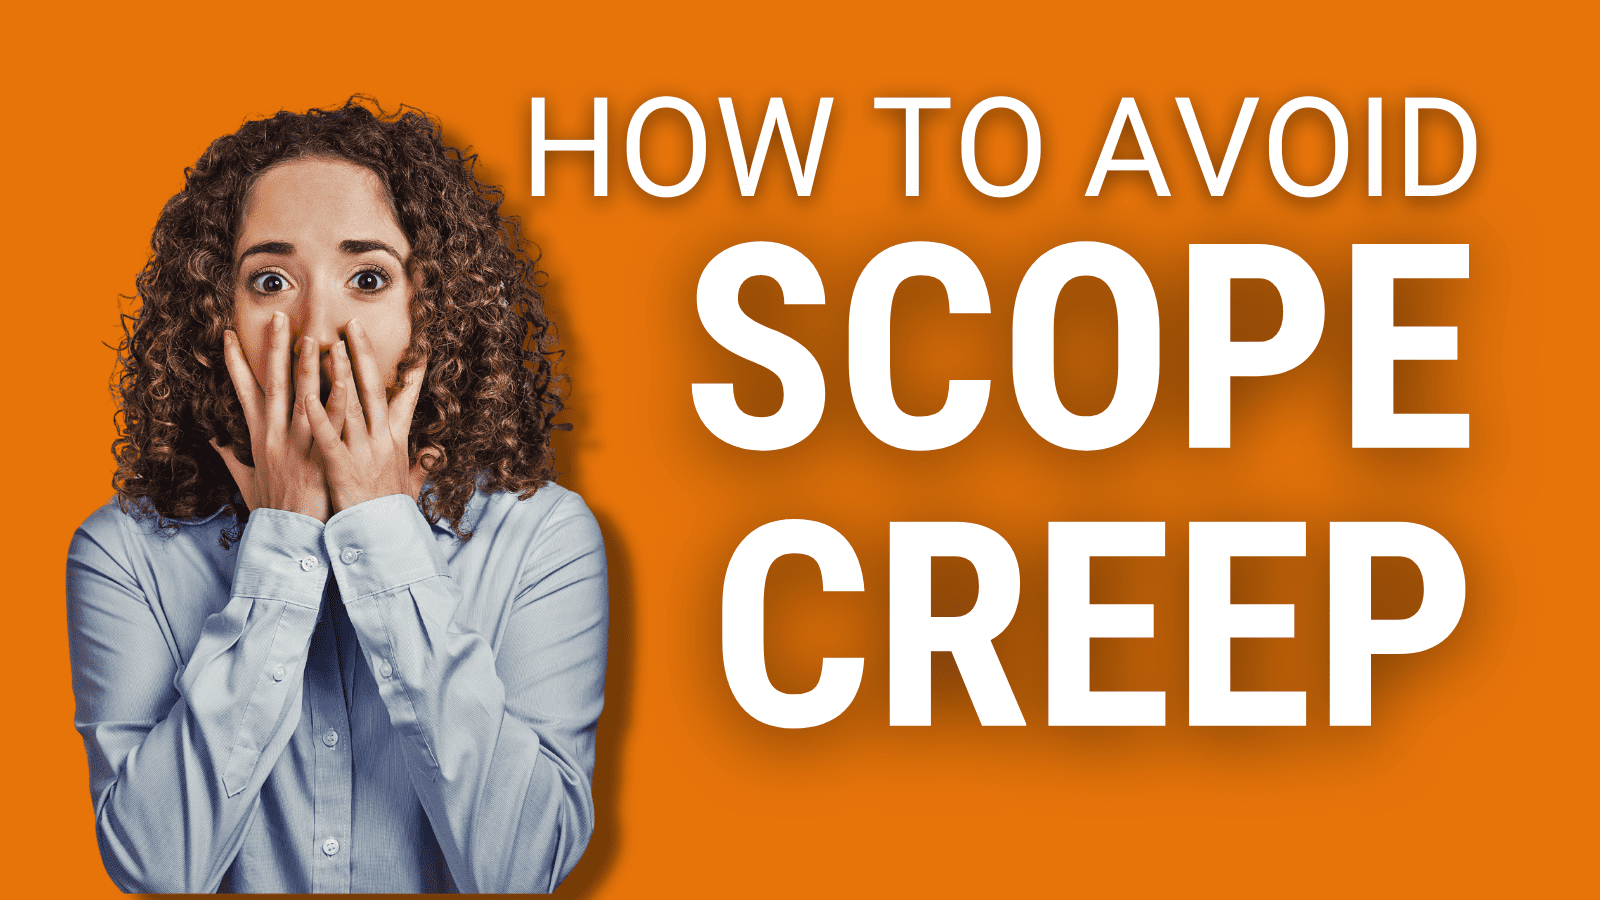 How to Avoid Scope Creep